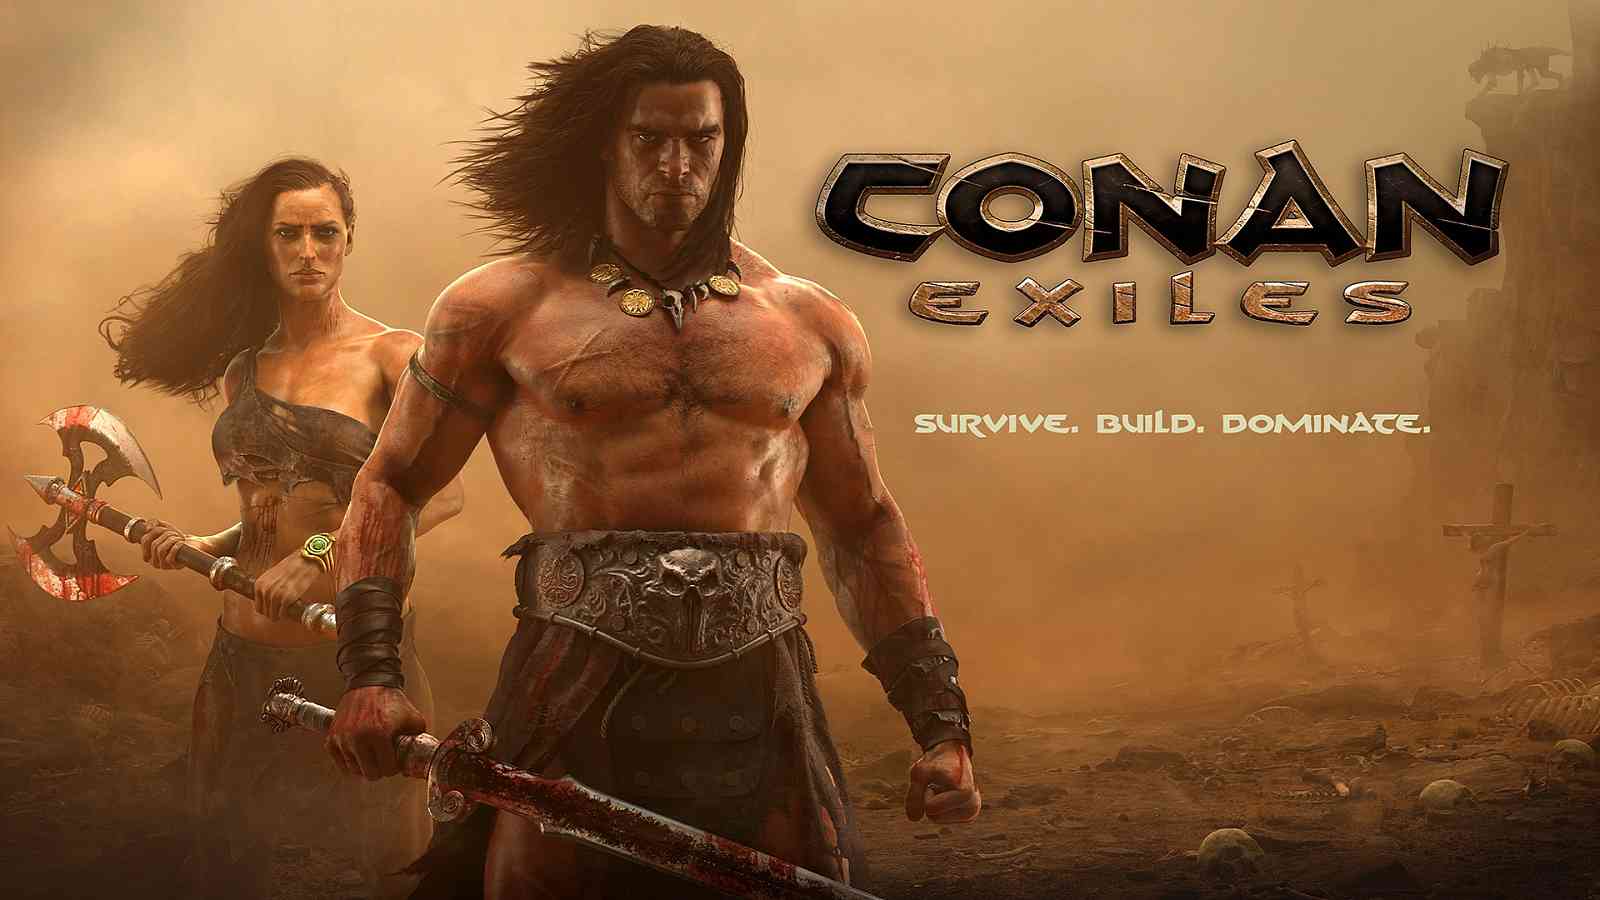 Recenze: Conan Exiles aneb další z titulů, kterým k dokonalosti chybí opravdu jen málo